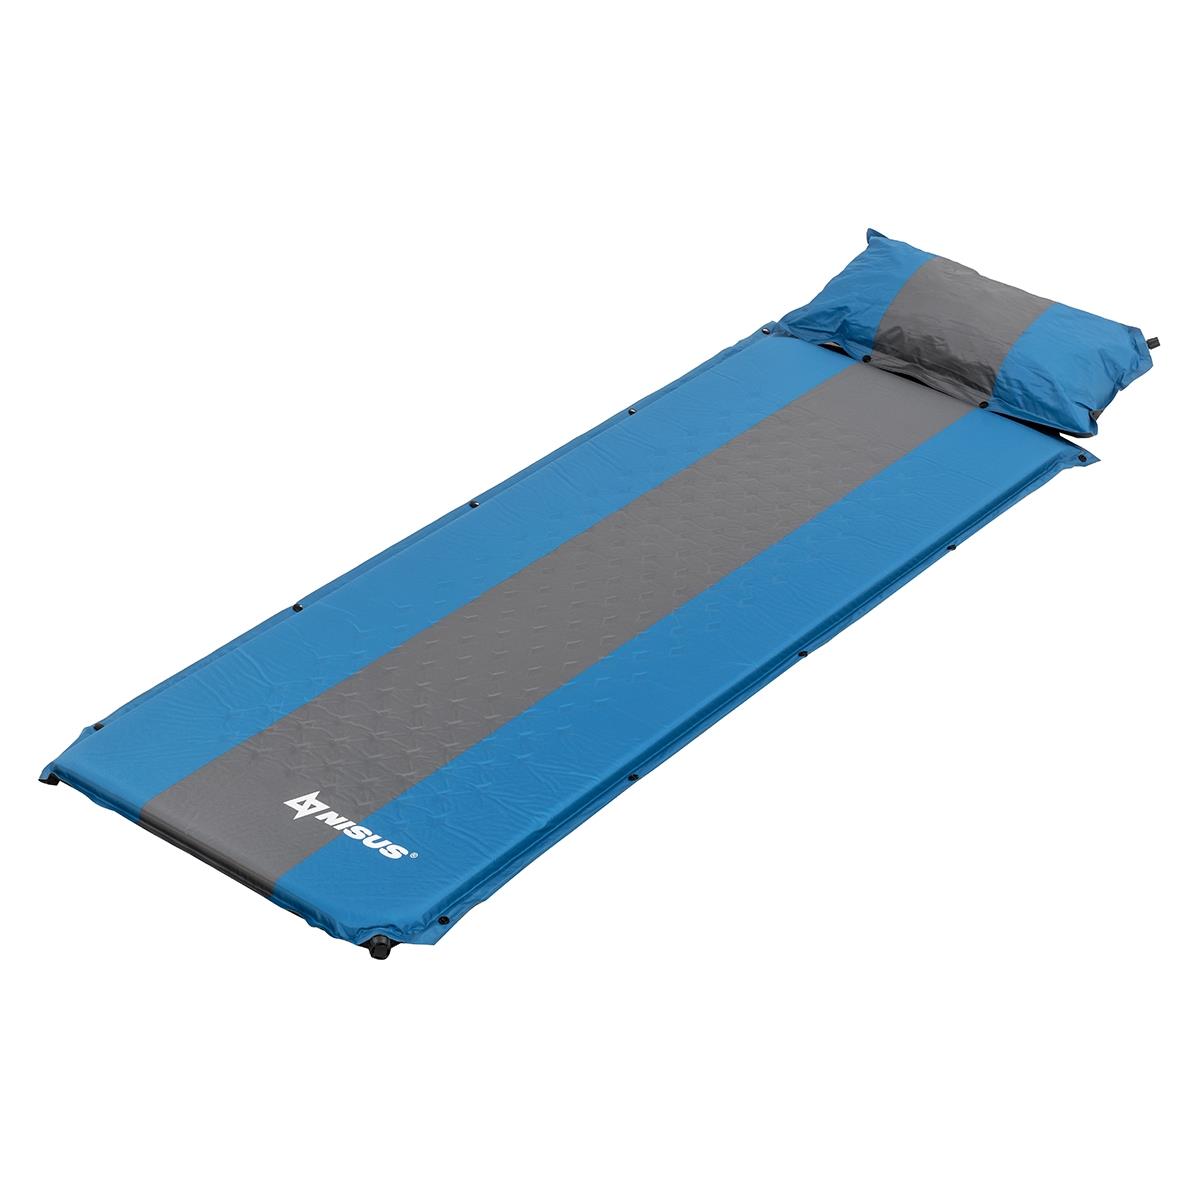 Коврик самонадув. с подушкой 30-170x65x4 голубой/серый (N-004P-BG) Nisus коврик для йоги для йоги bradex